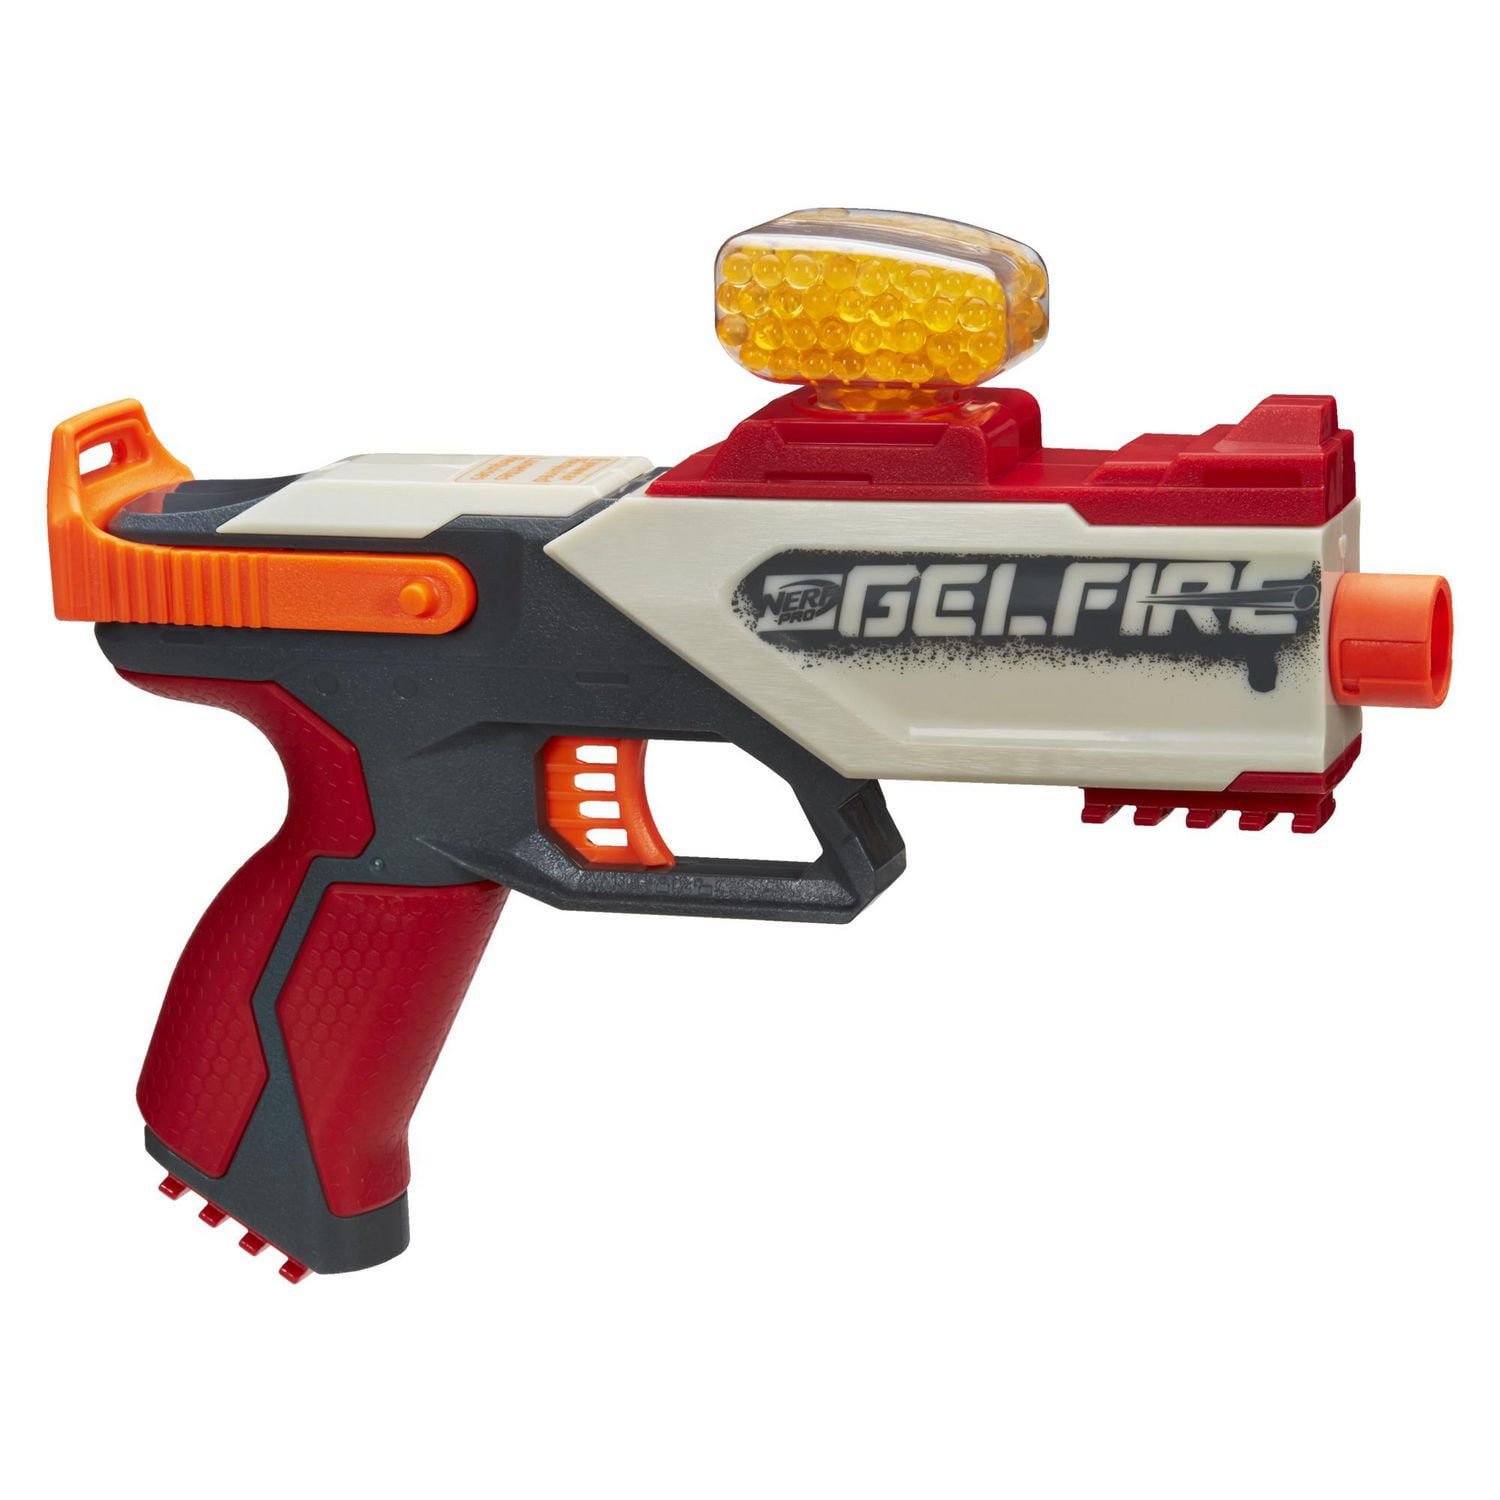 Nerf Pro Gelfire Legion Spring Action Blaster, 5000 Gelfire Rounds